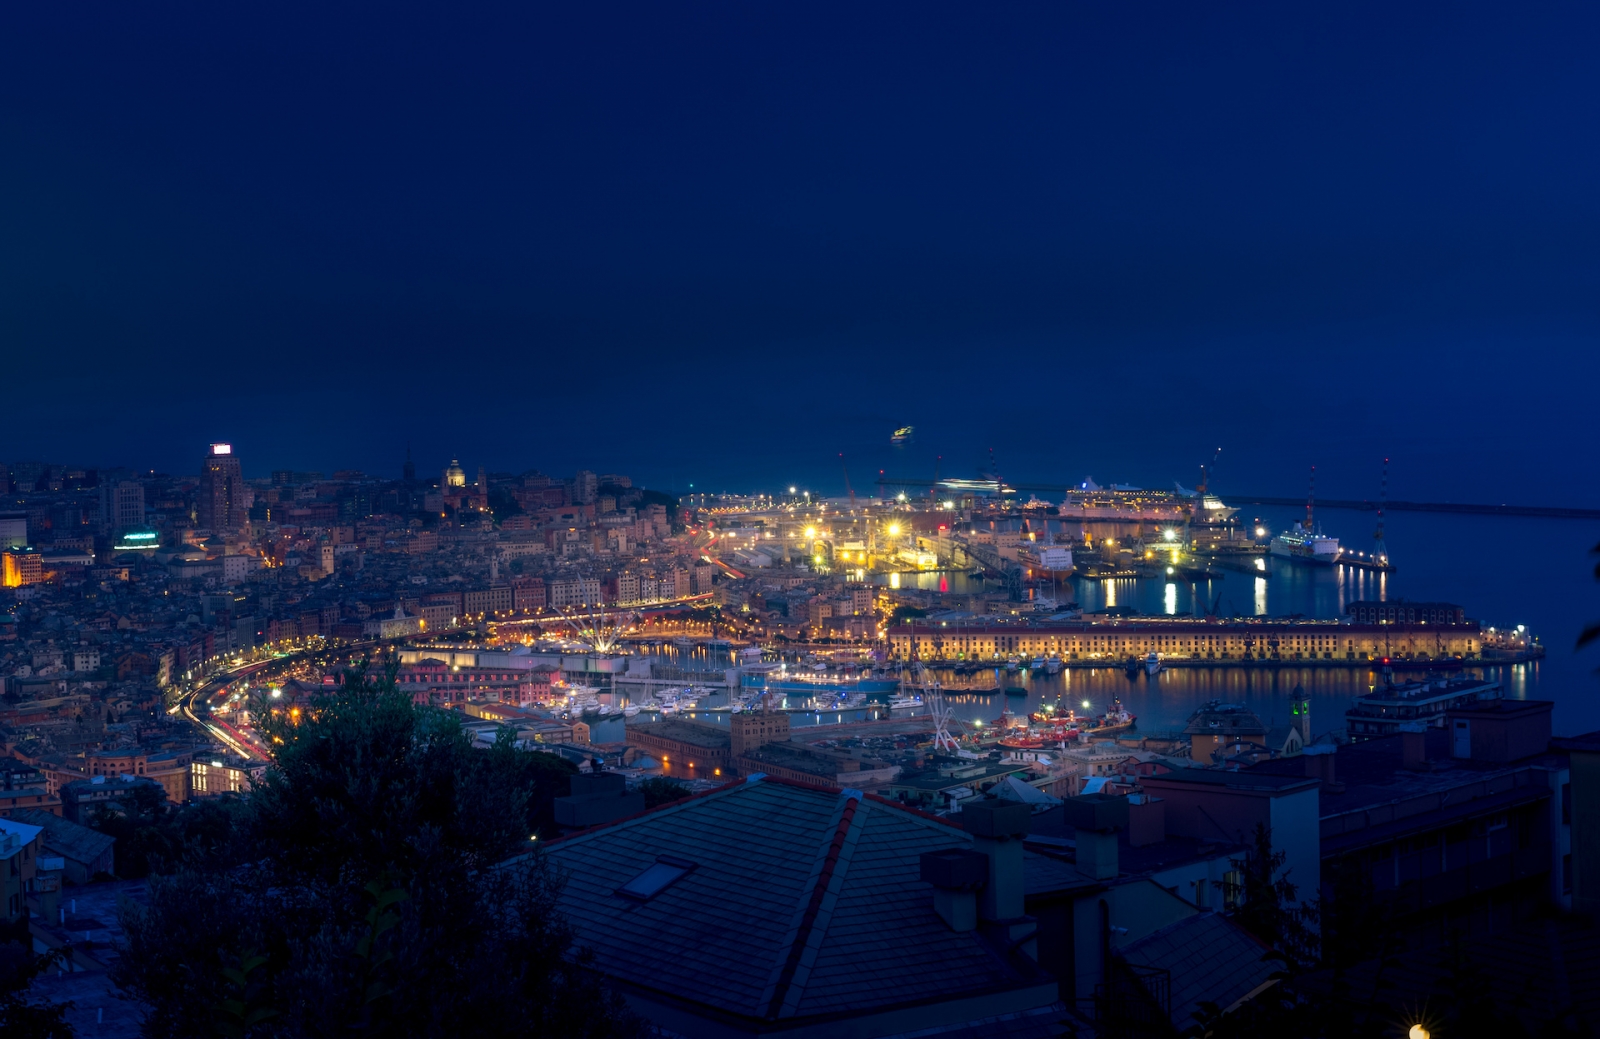 Nächtliches Stadtbild von Genua mit dem alten Hafen, Kreuzfahrtschiffen, See- und Hafenkränen im Hintergrund